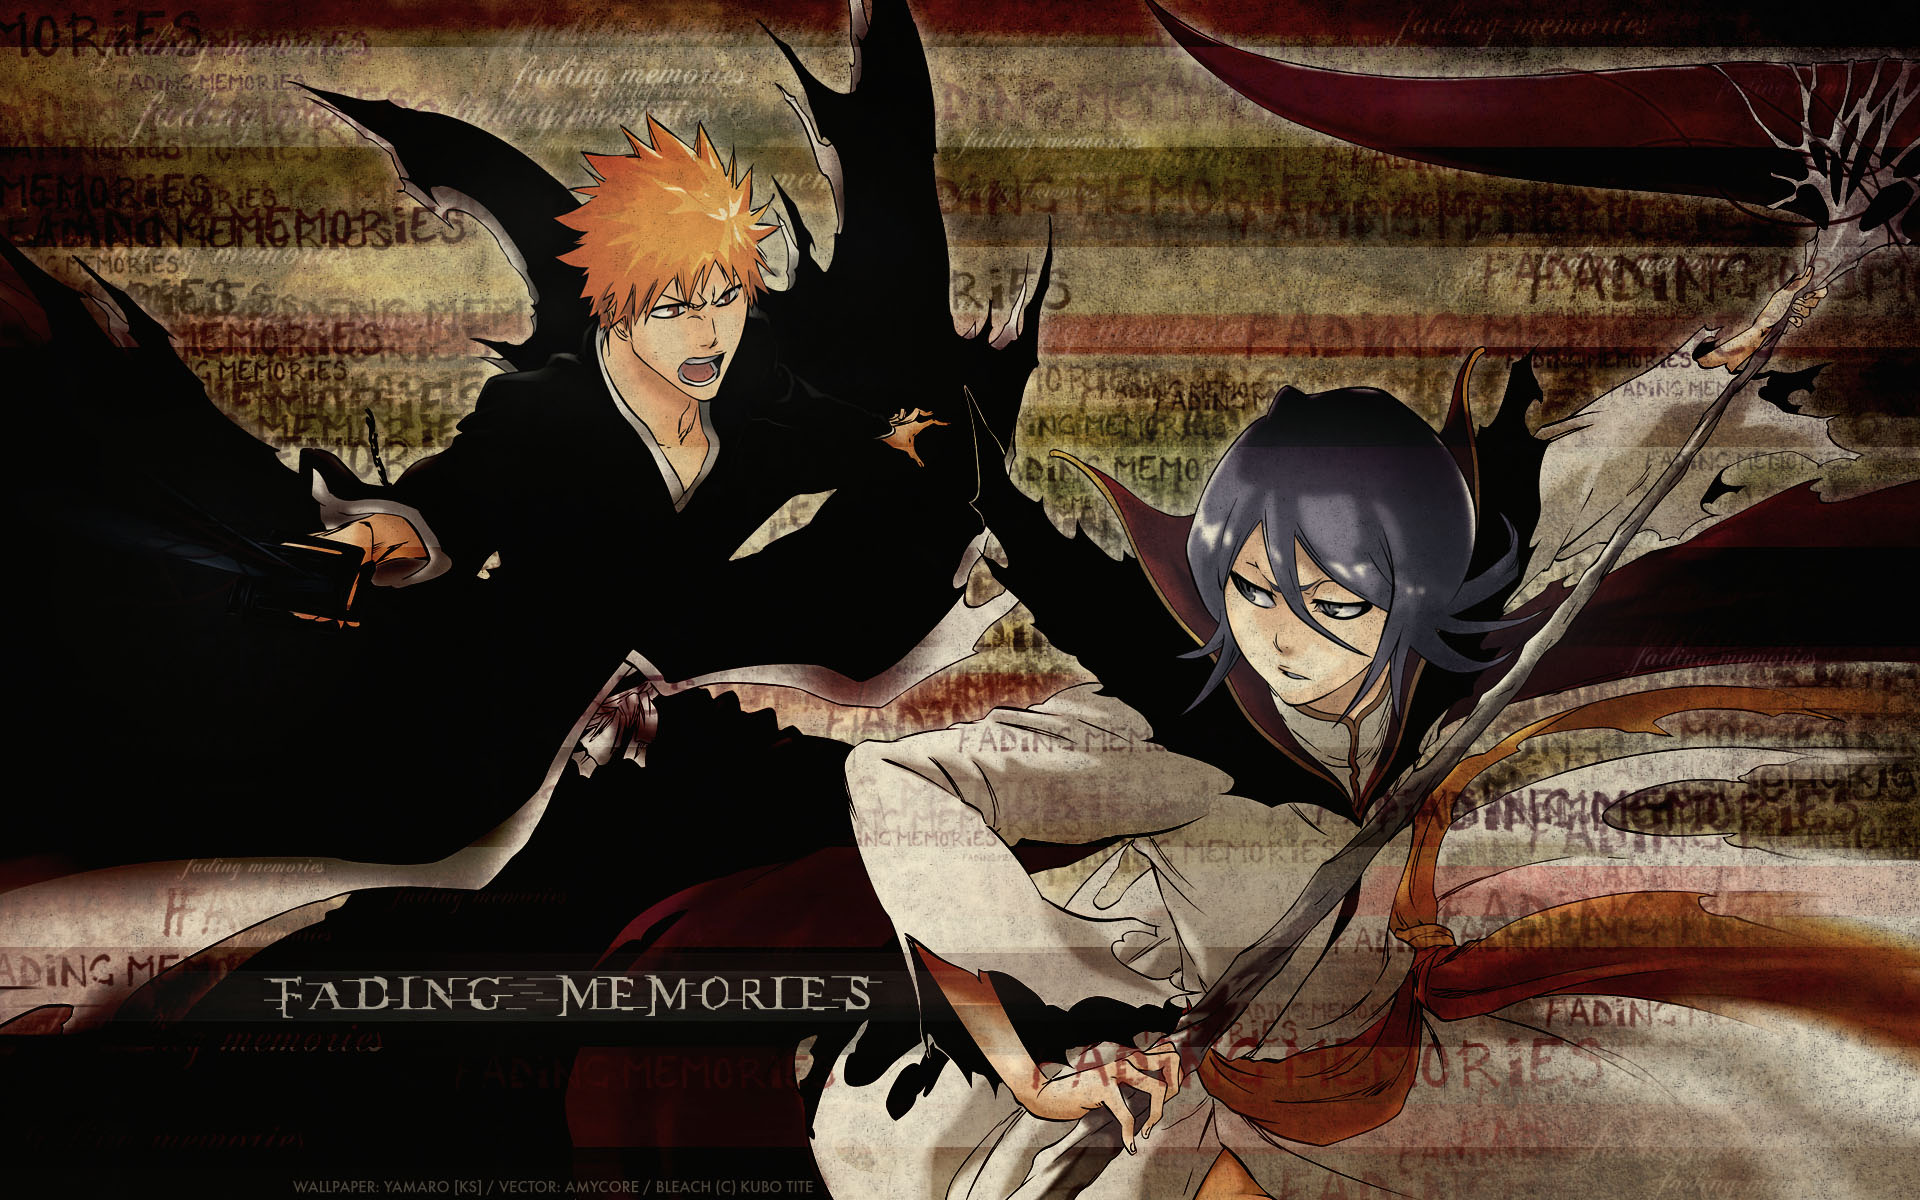 Anime Bleach HD Wallpaper